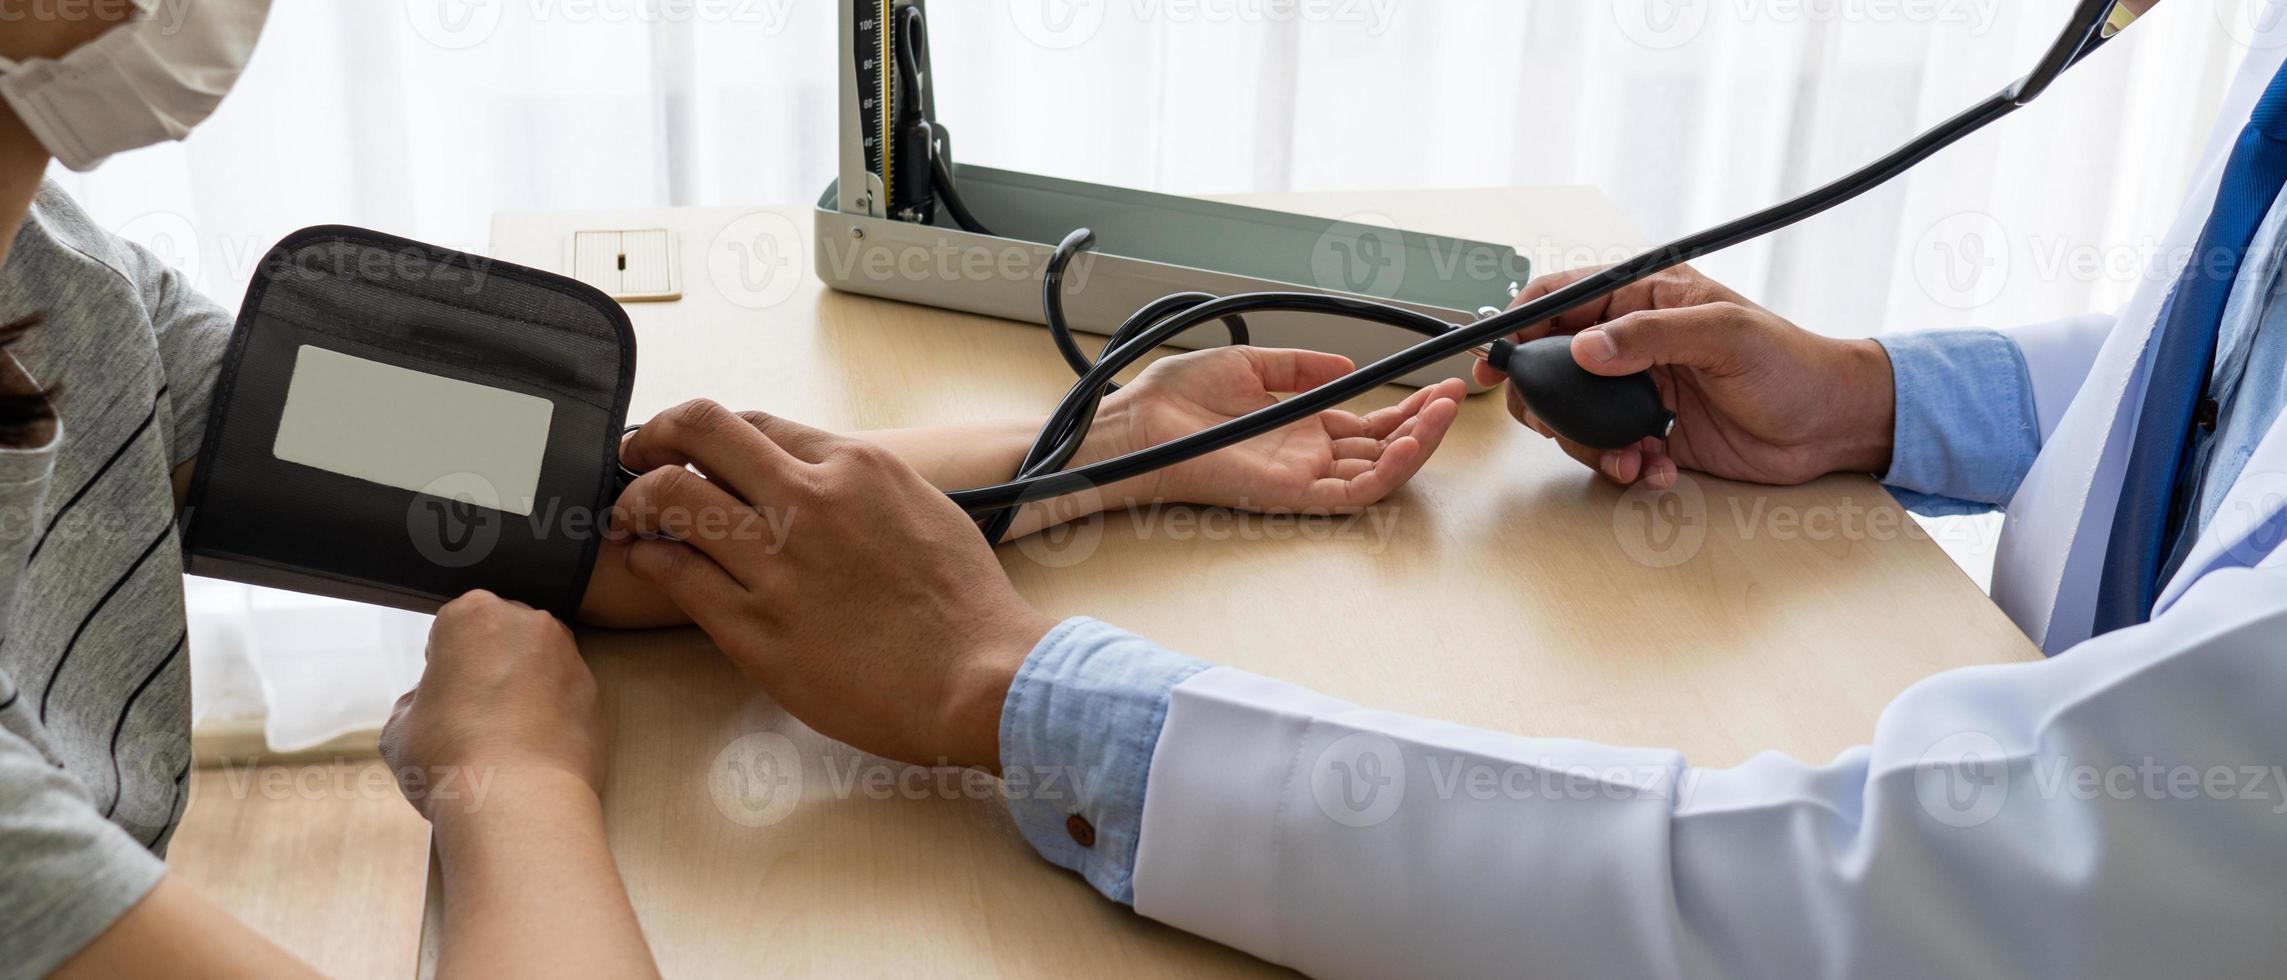 médecin utilisant un sphygmomanomètre pour mesurer la pression artérielle du patient photo